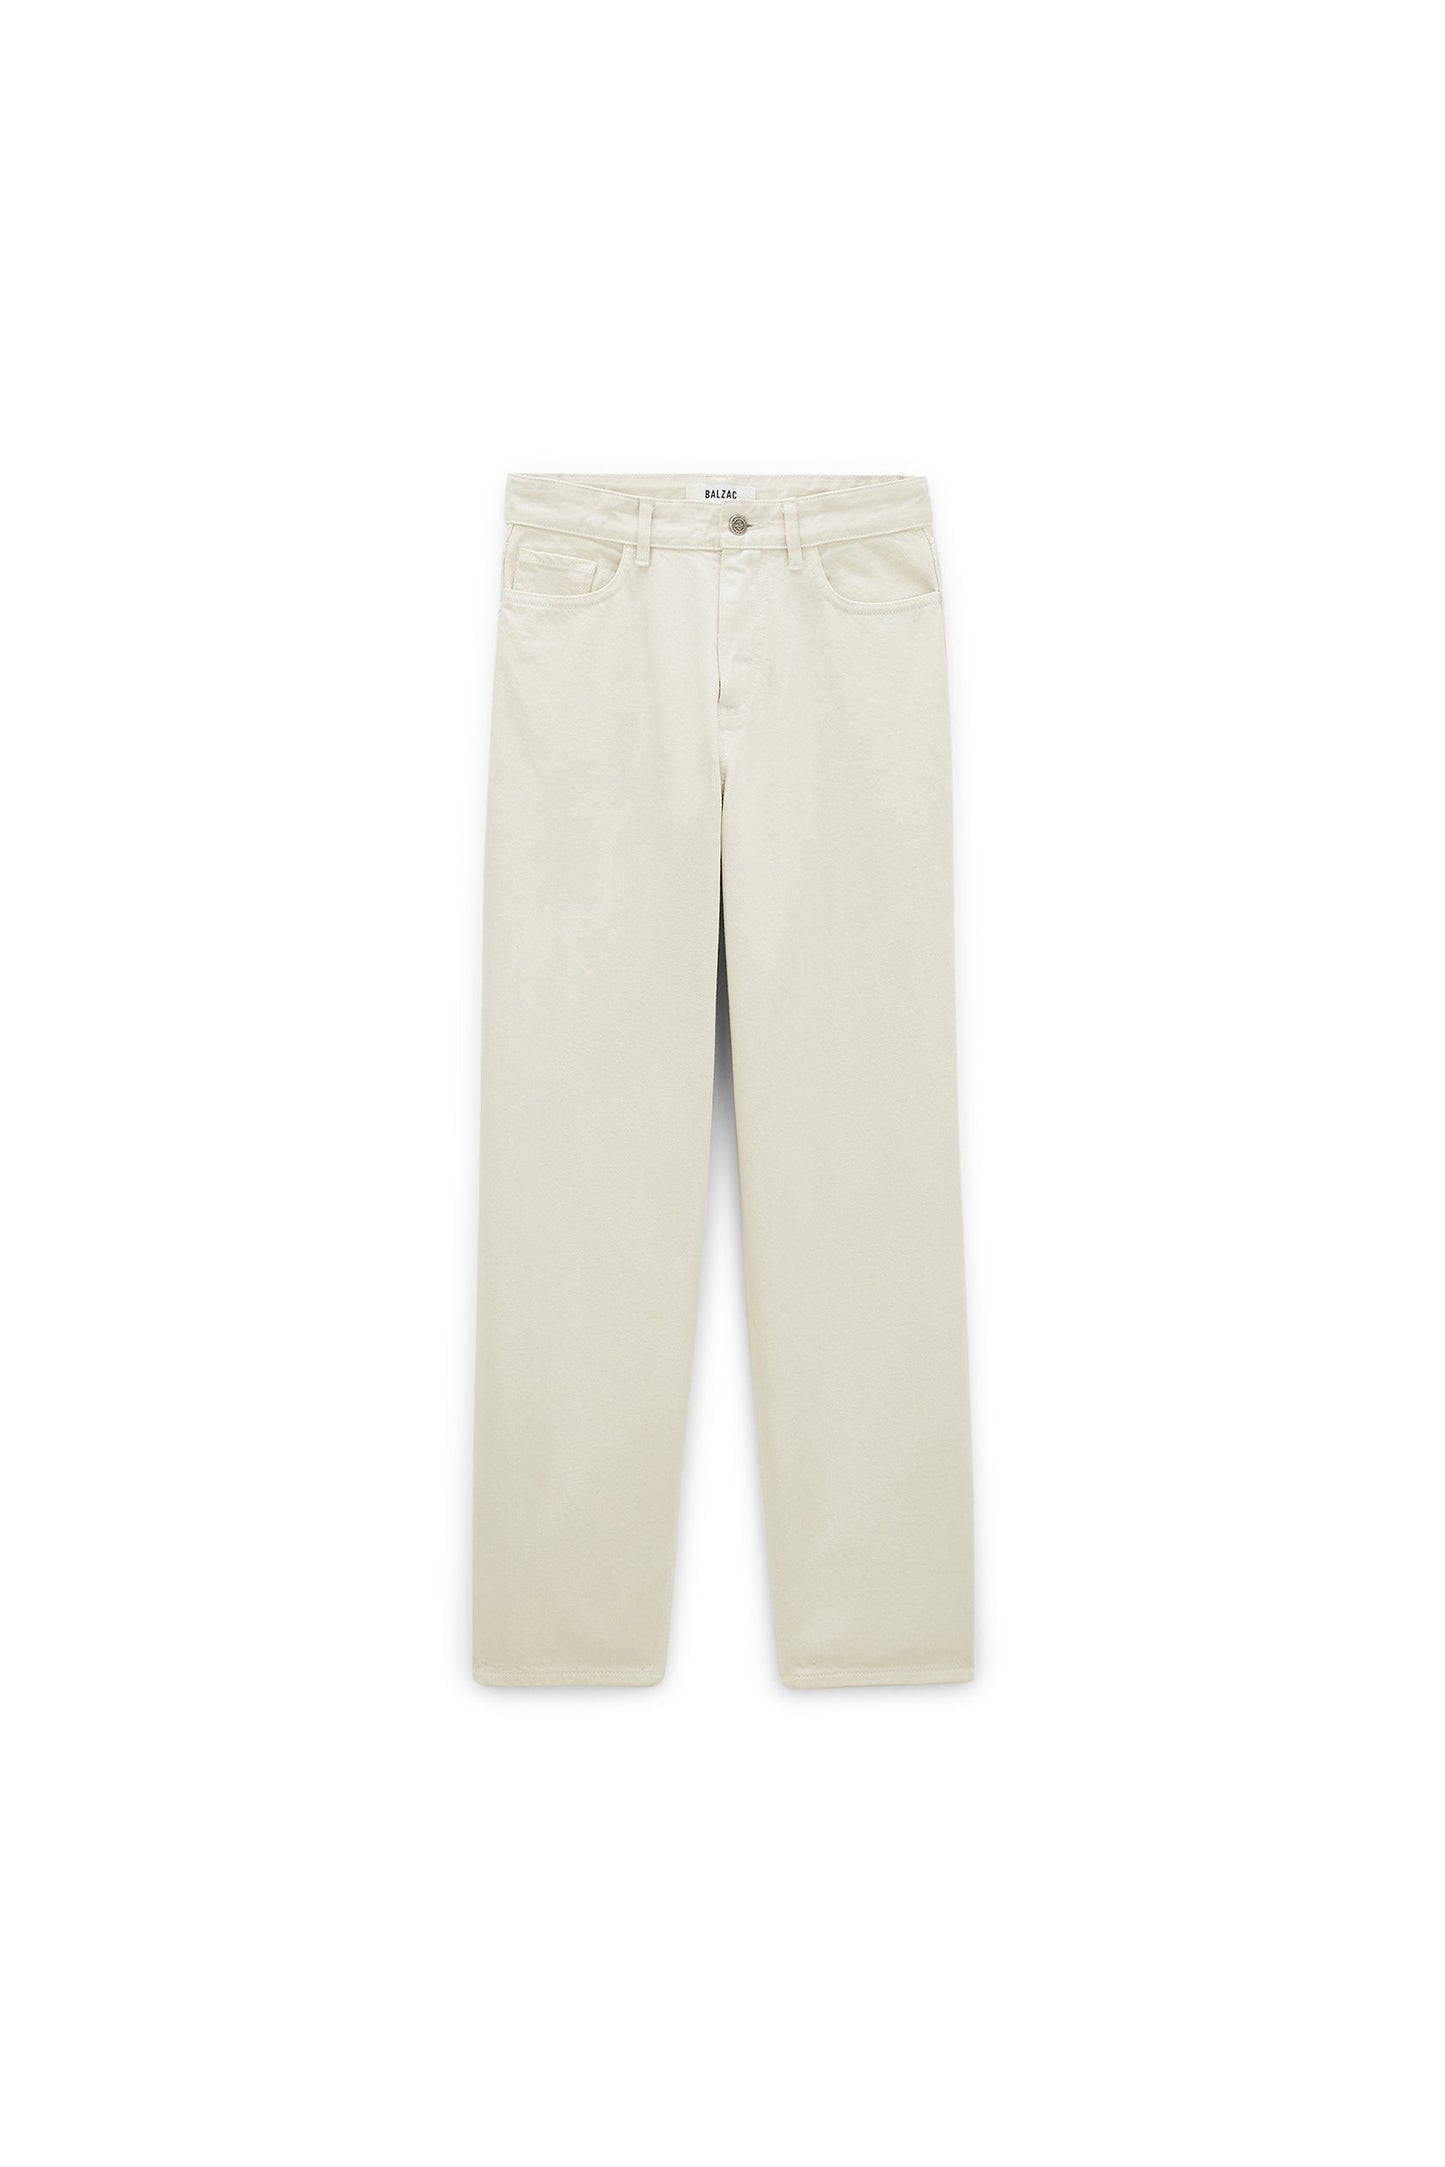 Pampas beige Vallon jeans